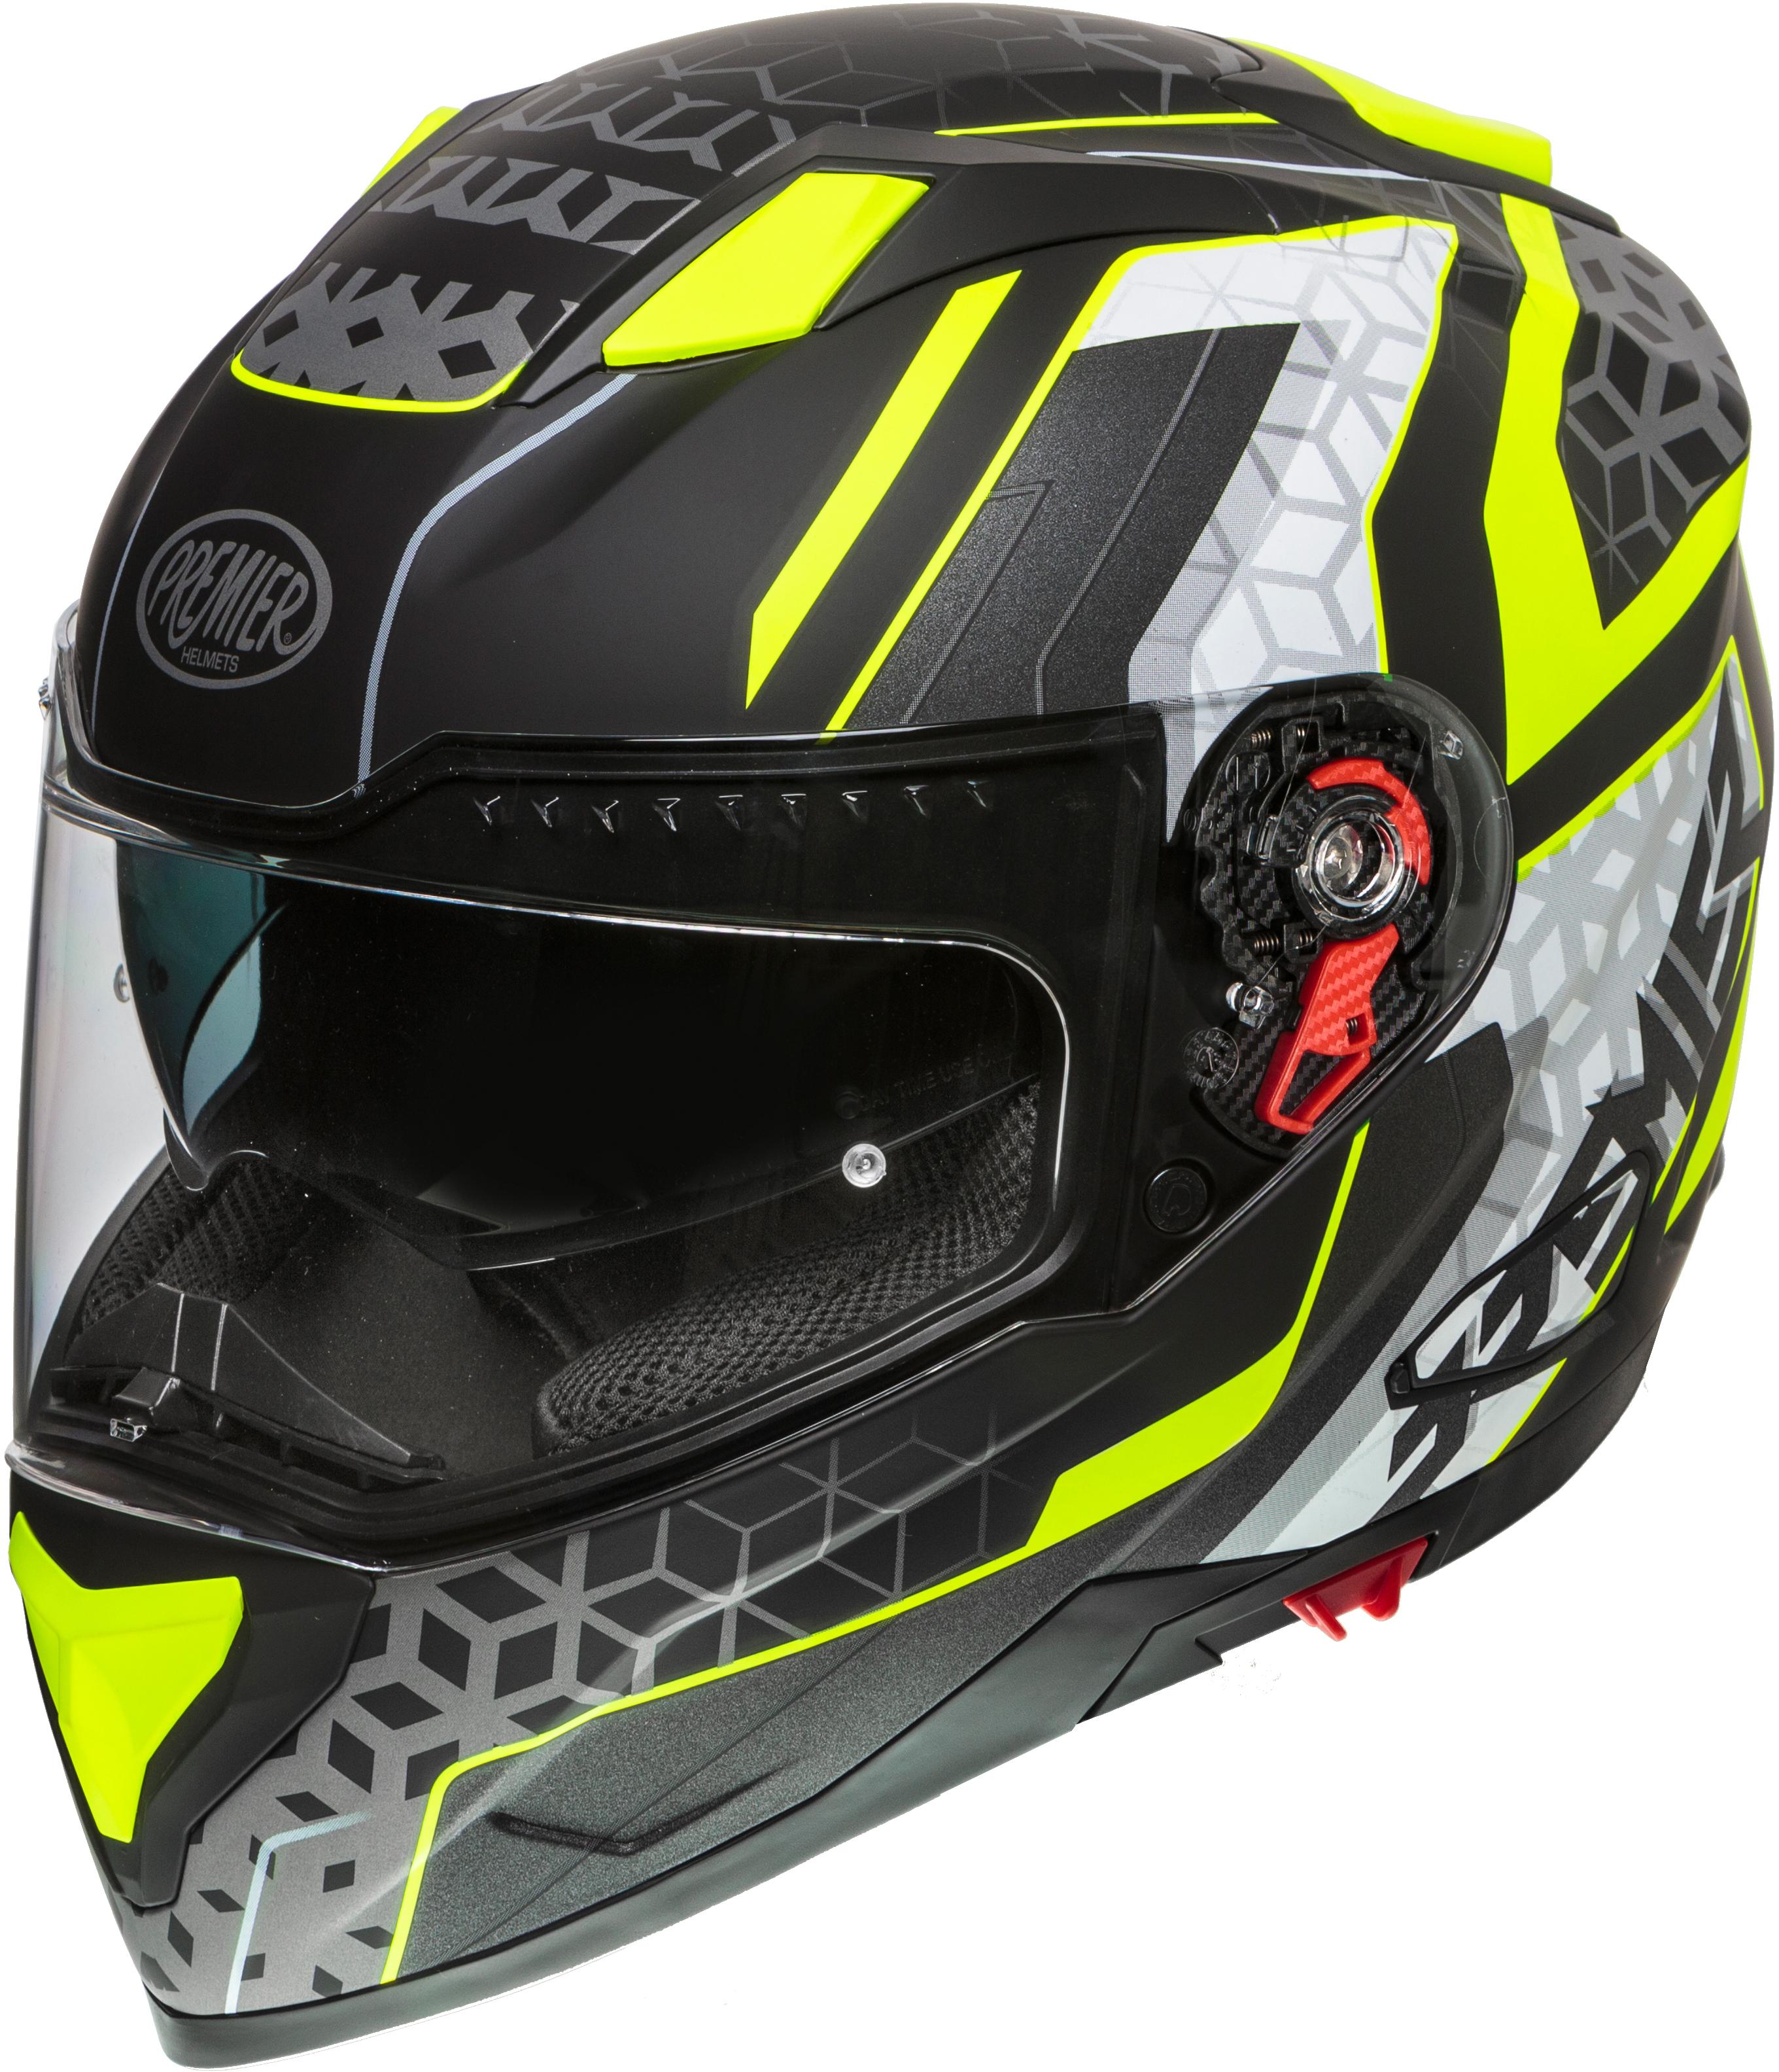 Premier Vyrus Helmet Black/Neon Large